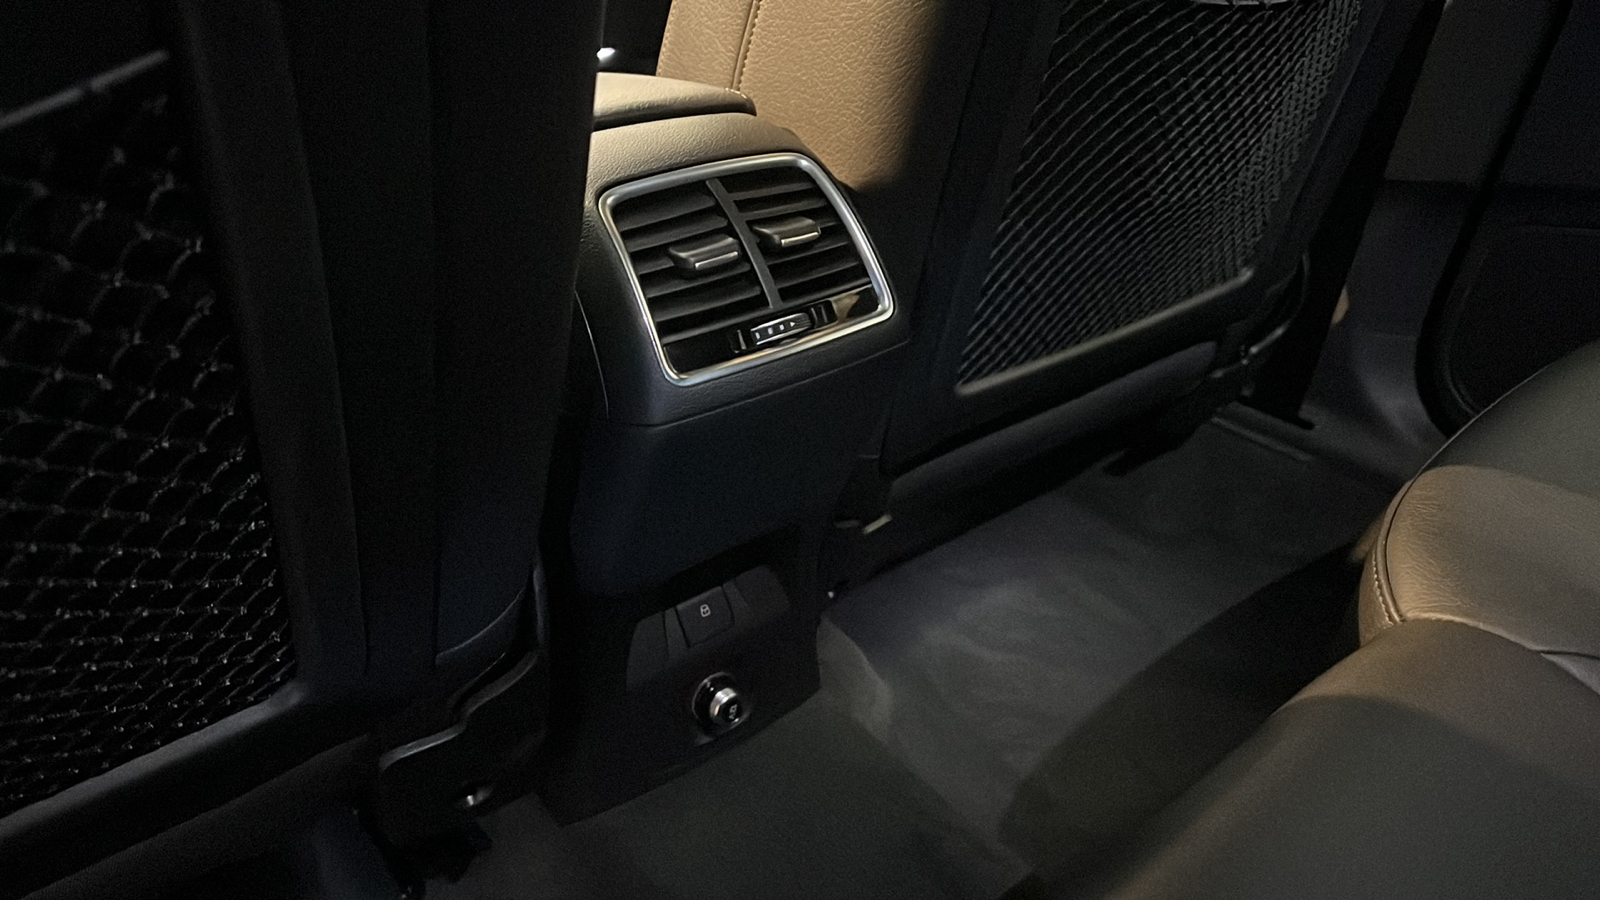 2016 Audi Q3 2.0T Premium Plus 10